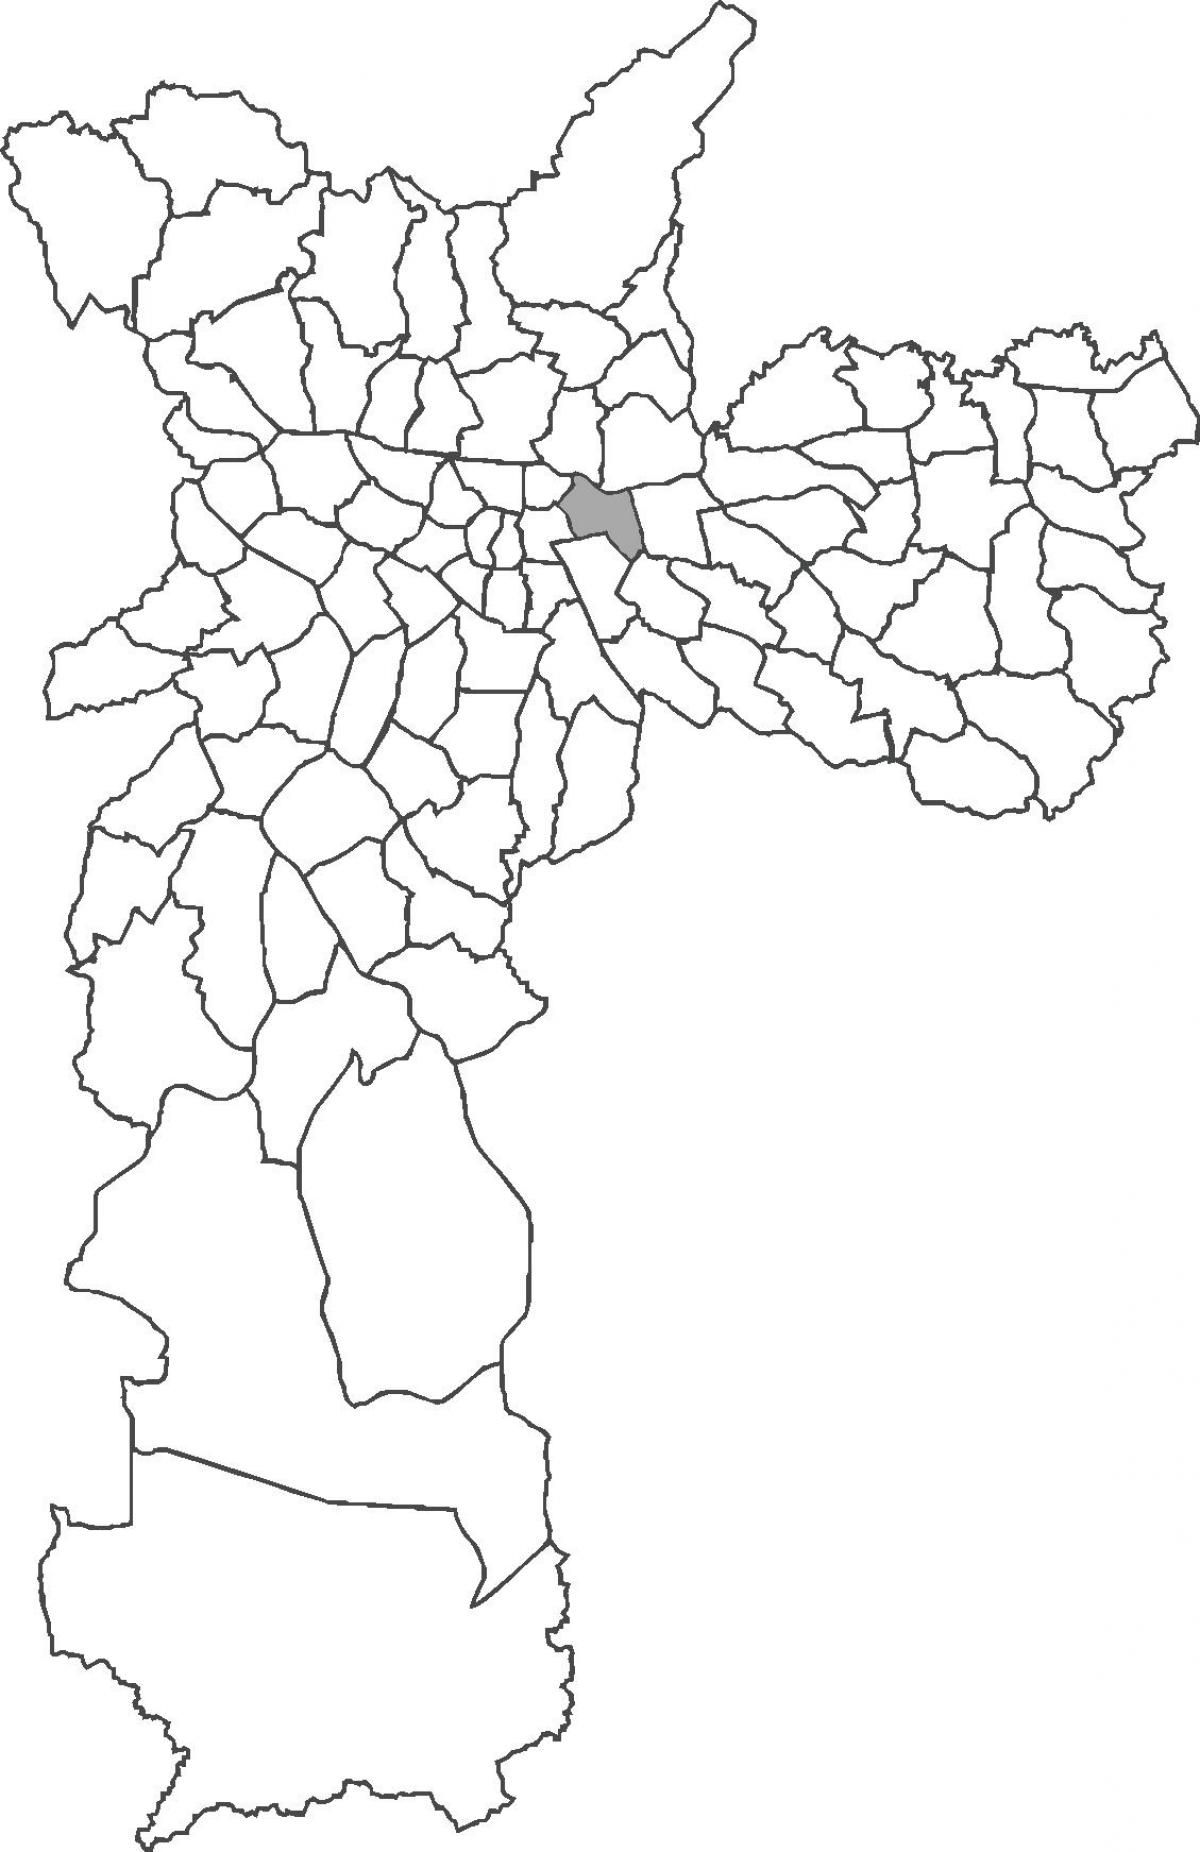 แผนที่ของ Belém เขต